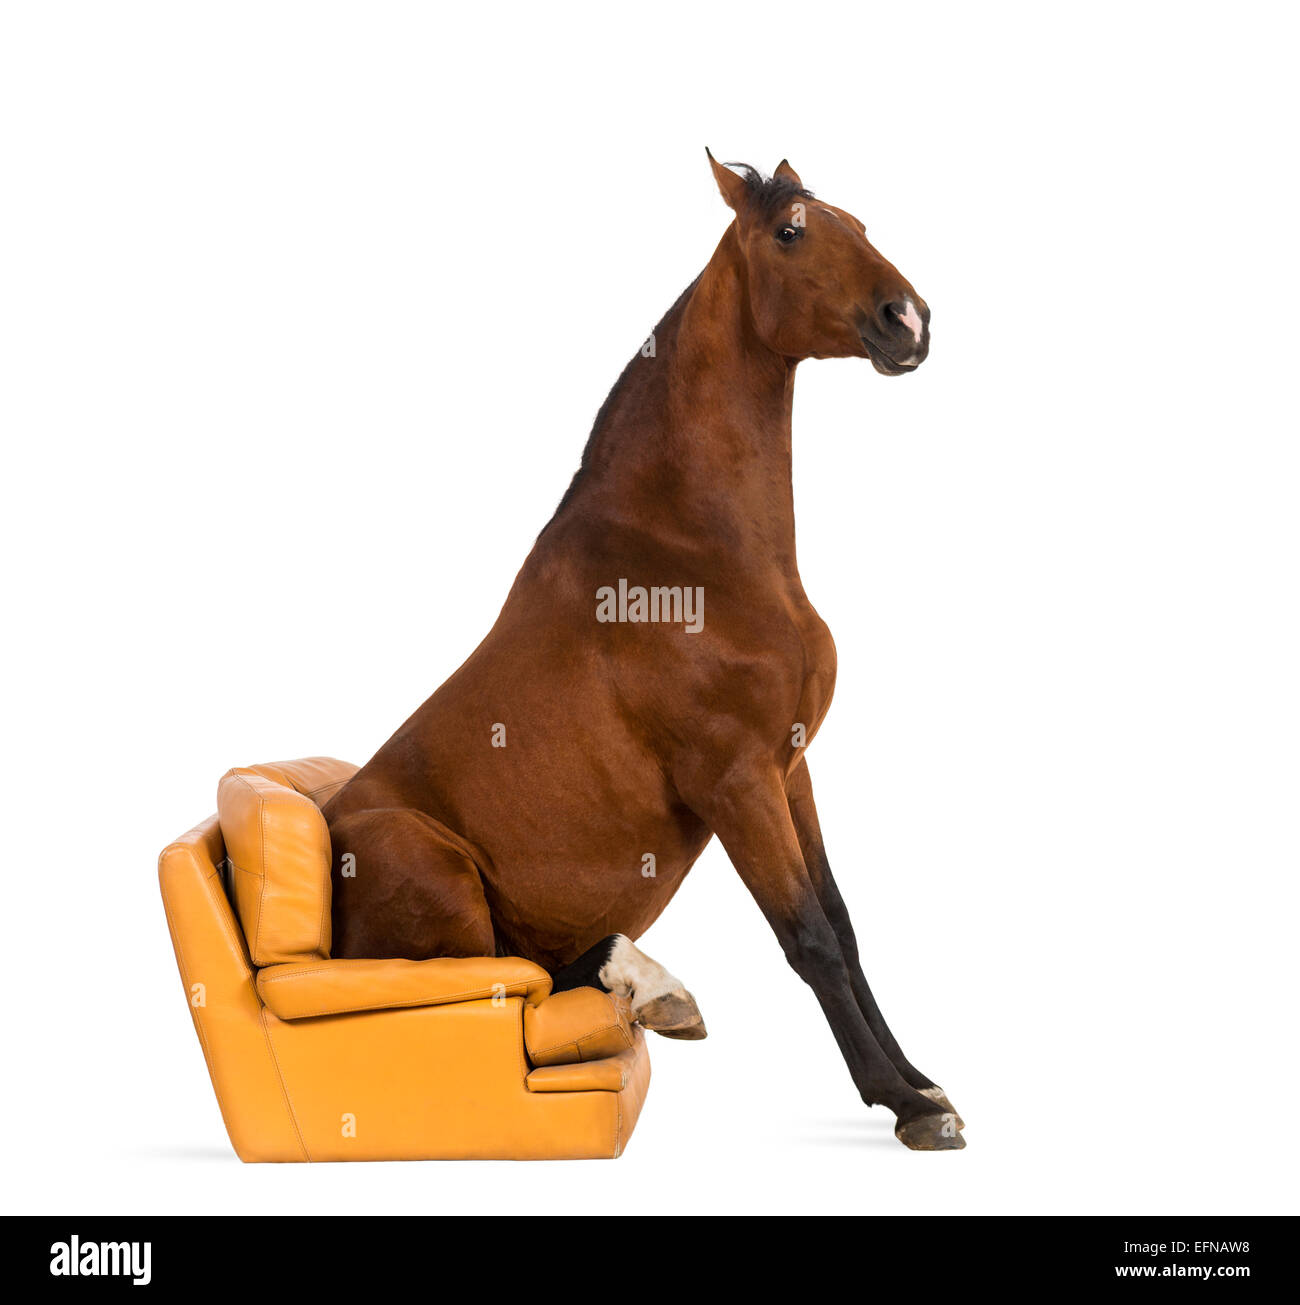 Cavallo andaluso seduta su una poltrona contro uno sfondo bianco Foto Stock